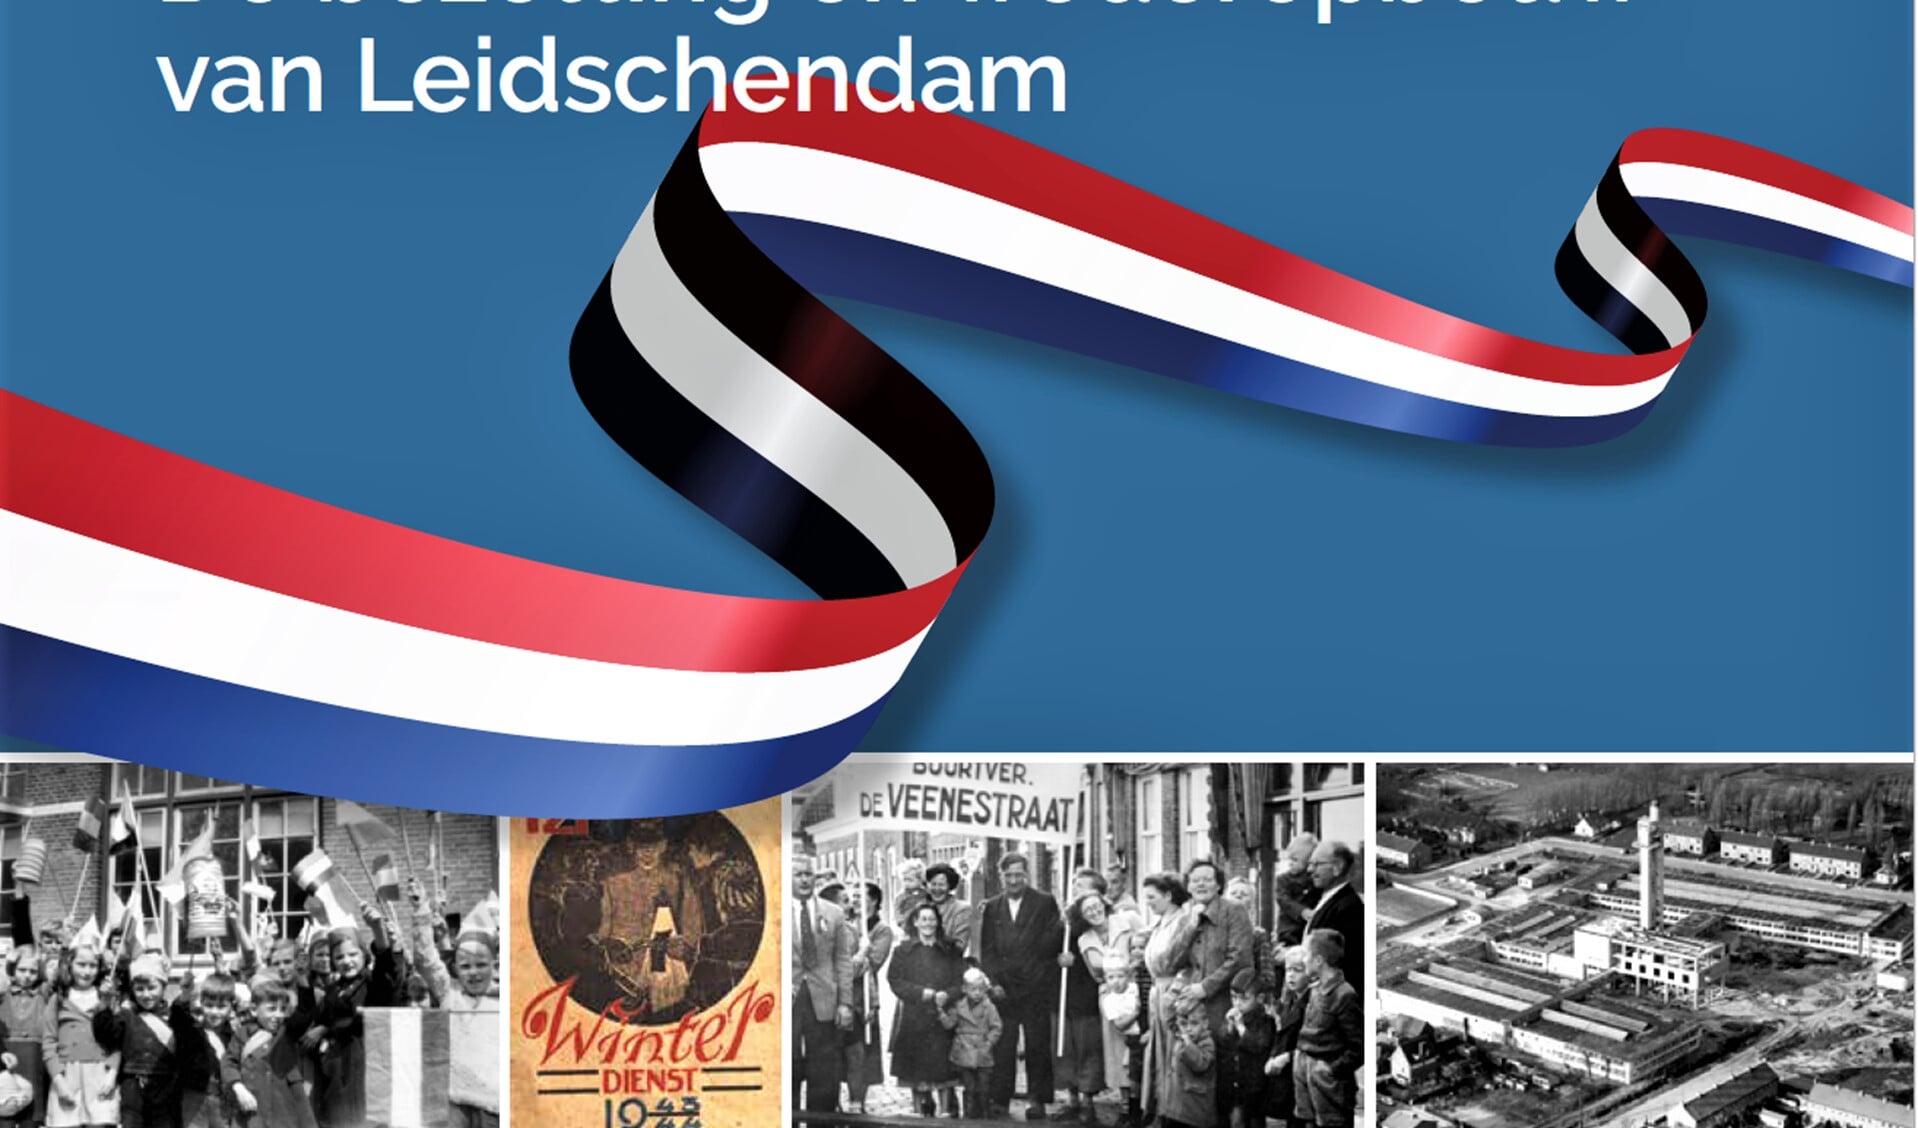 De cover van het boek.over de bezetting en wederopbouw van Leidschendam.